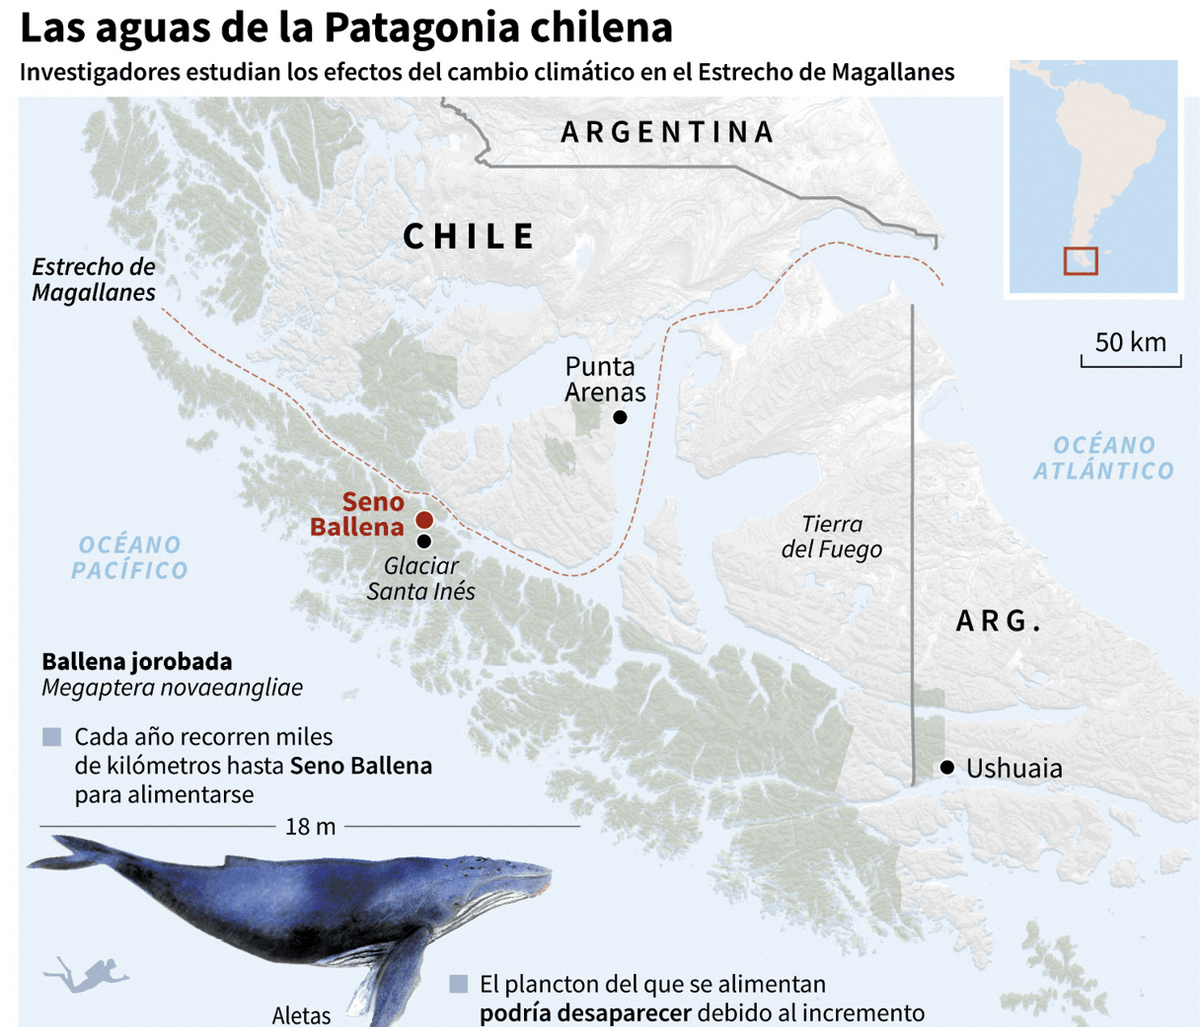 Mapa de la Patagonia chilena donde se señala la ubicación de Seno Ballena, Centro IDEAL/AFP, 2018